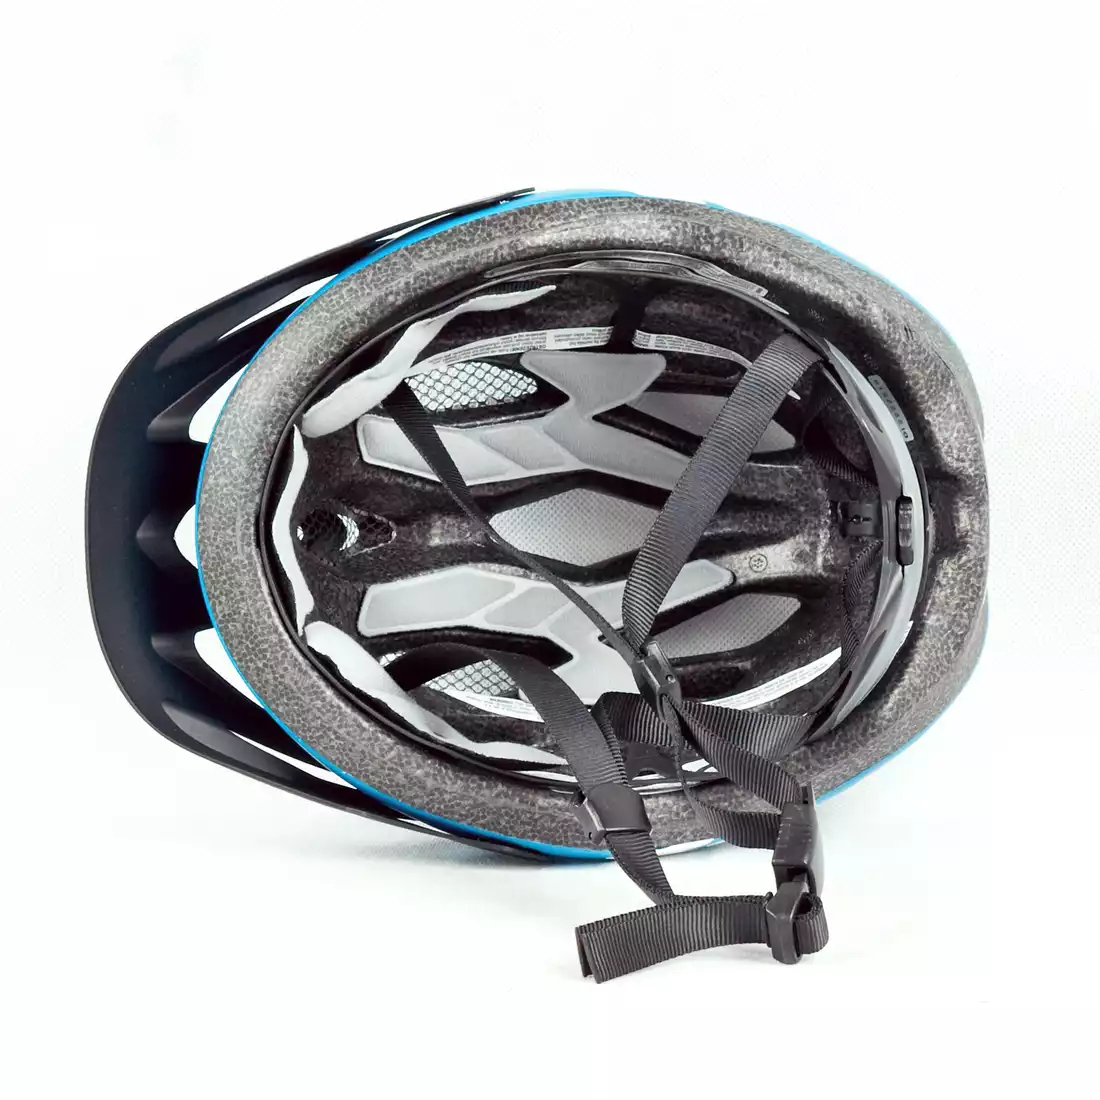 BELL INDY - kask rowerowy, niebieski mat